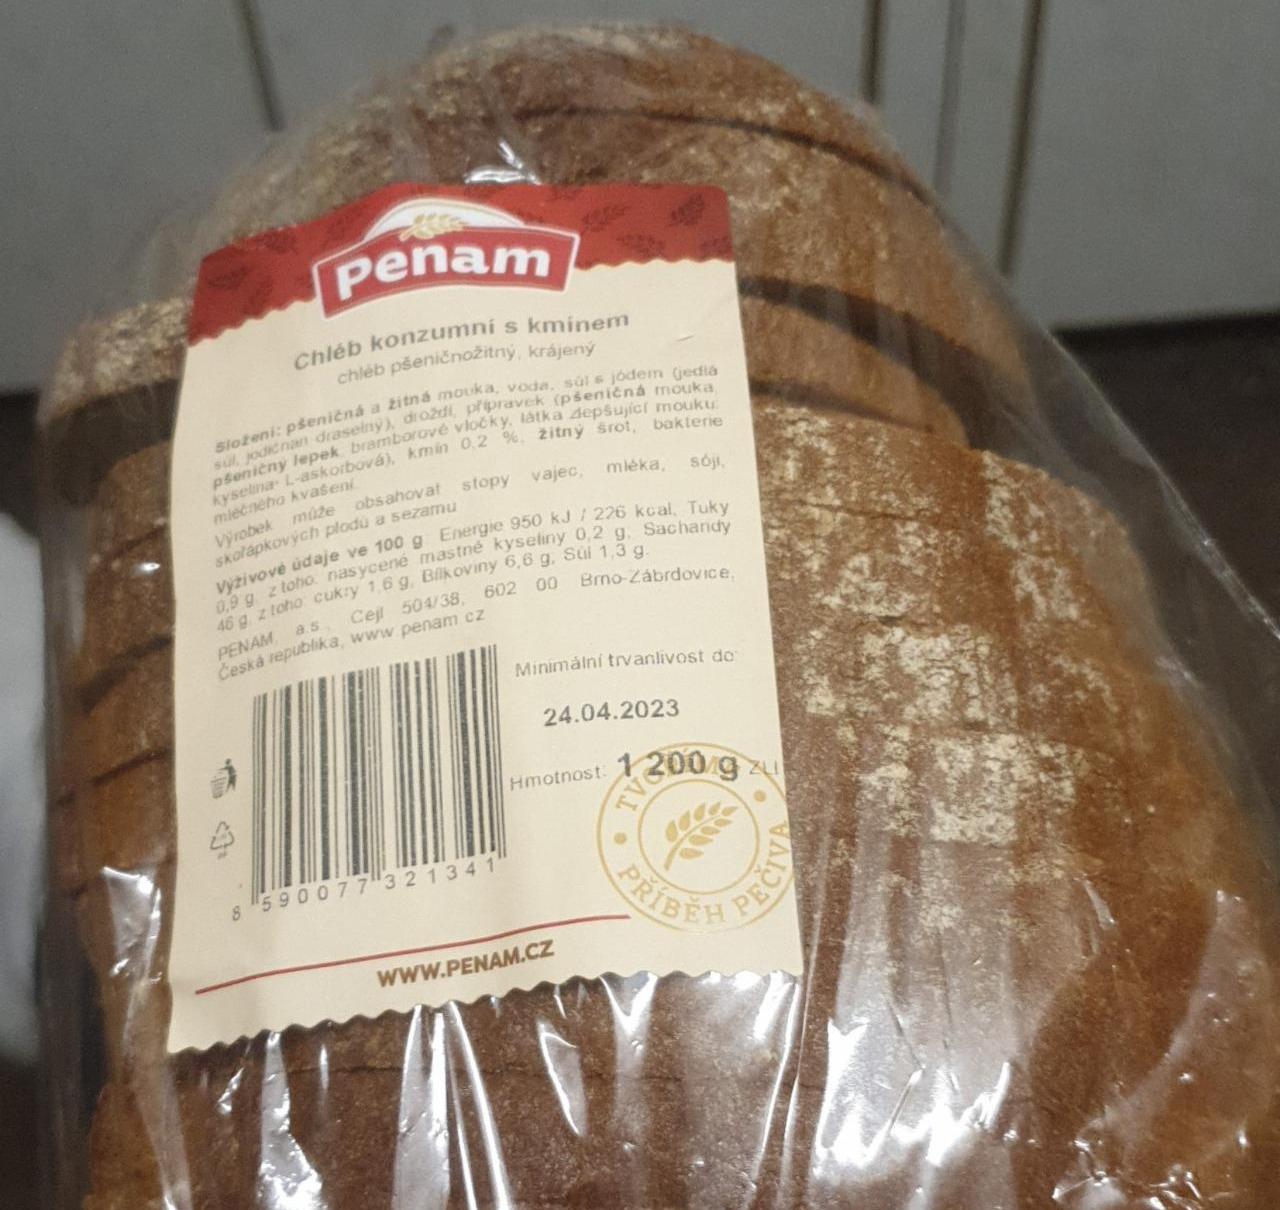 Fotografie - Chléb konzumní s kmínem (chléb pšeničnožitný, krájený) Penam